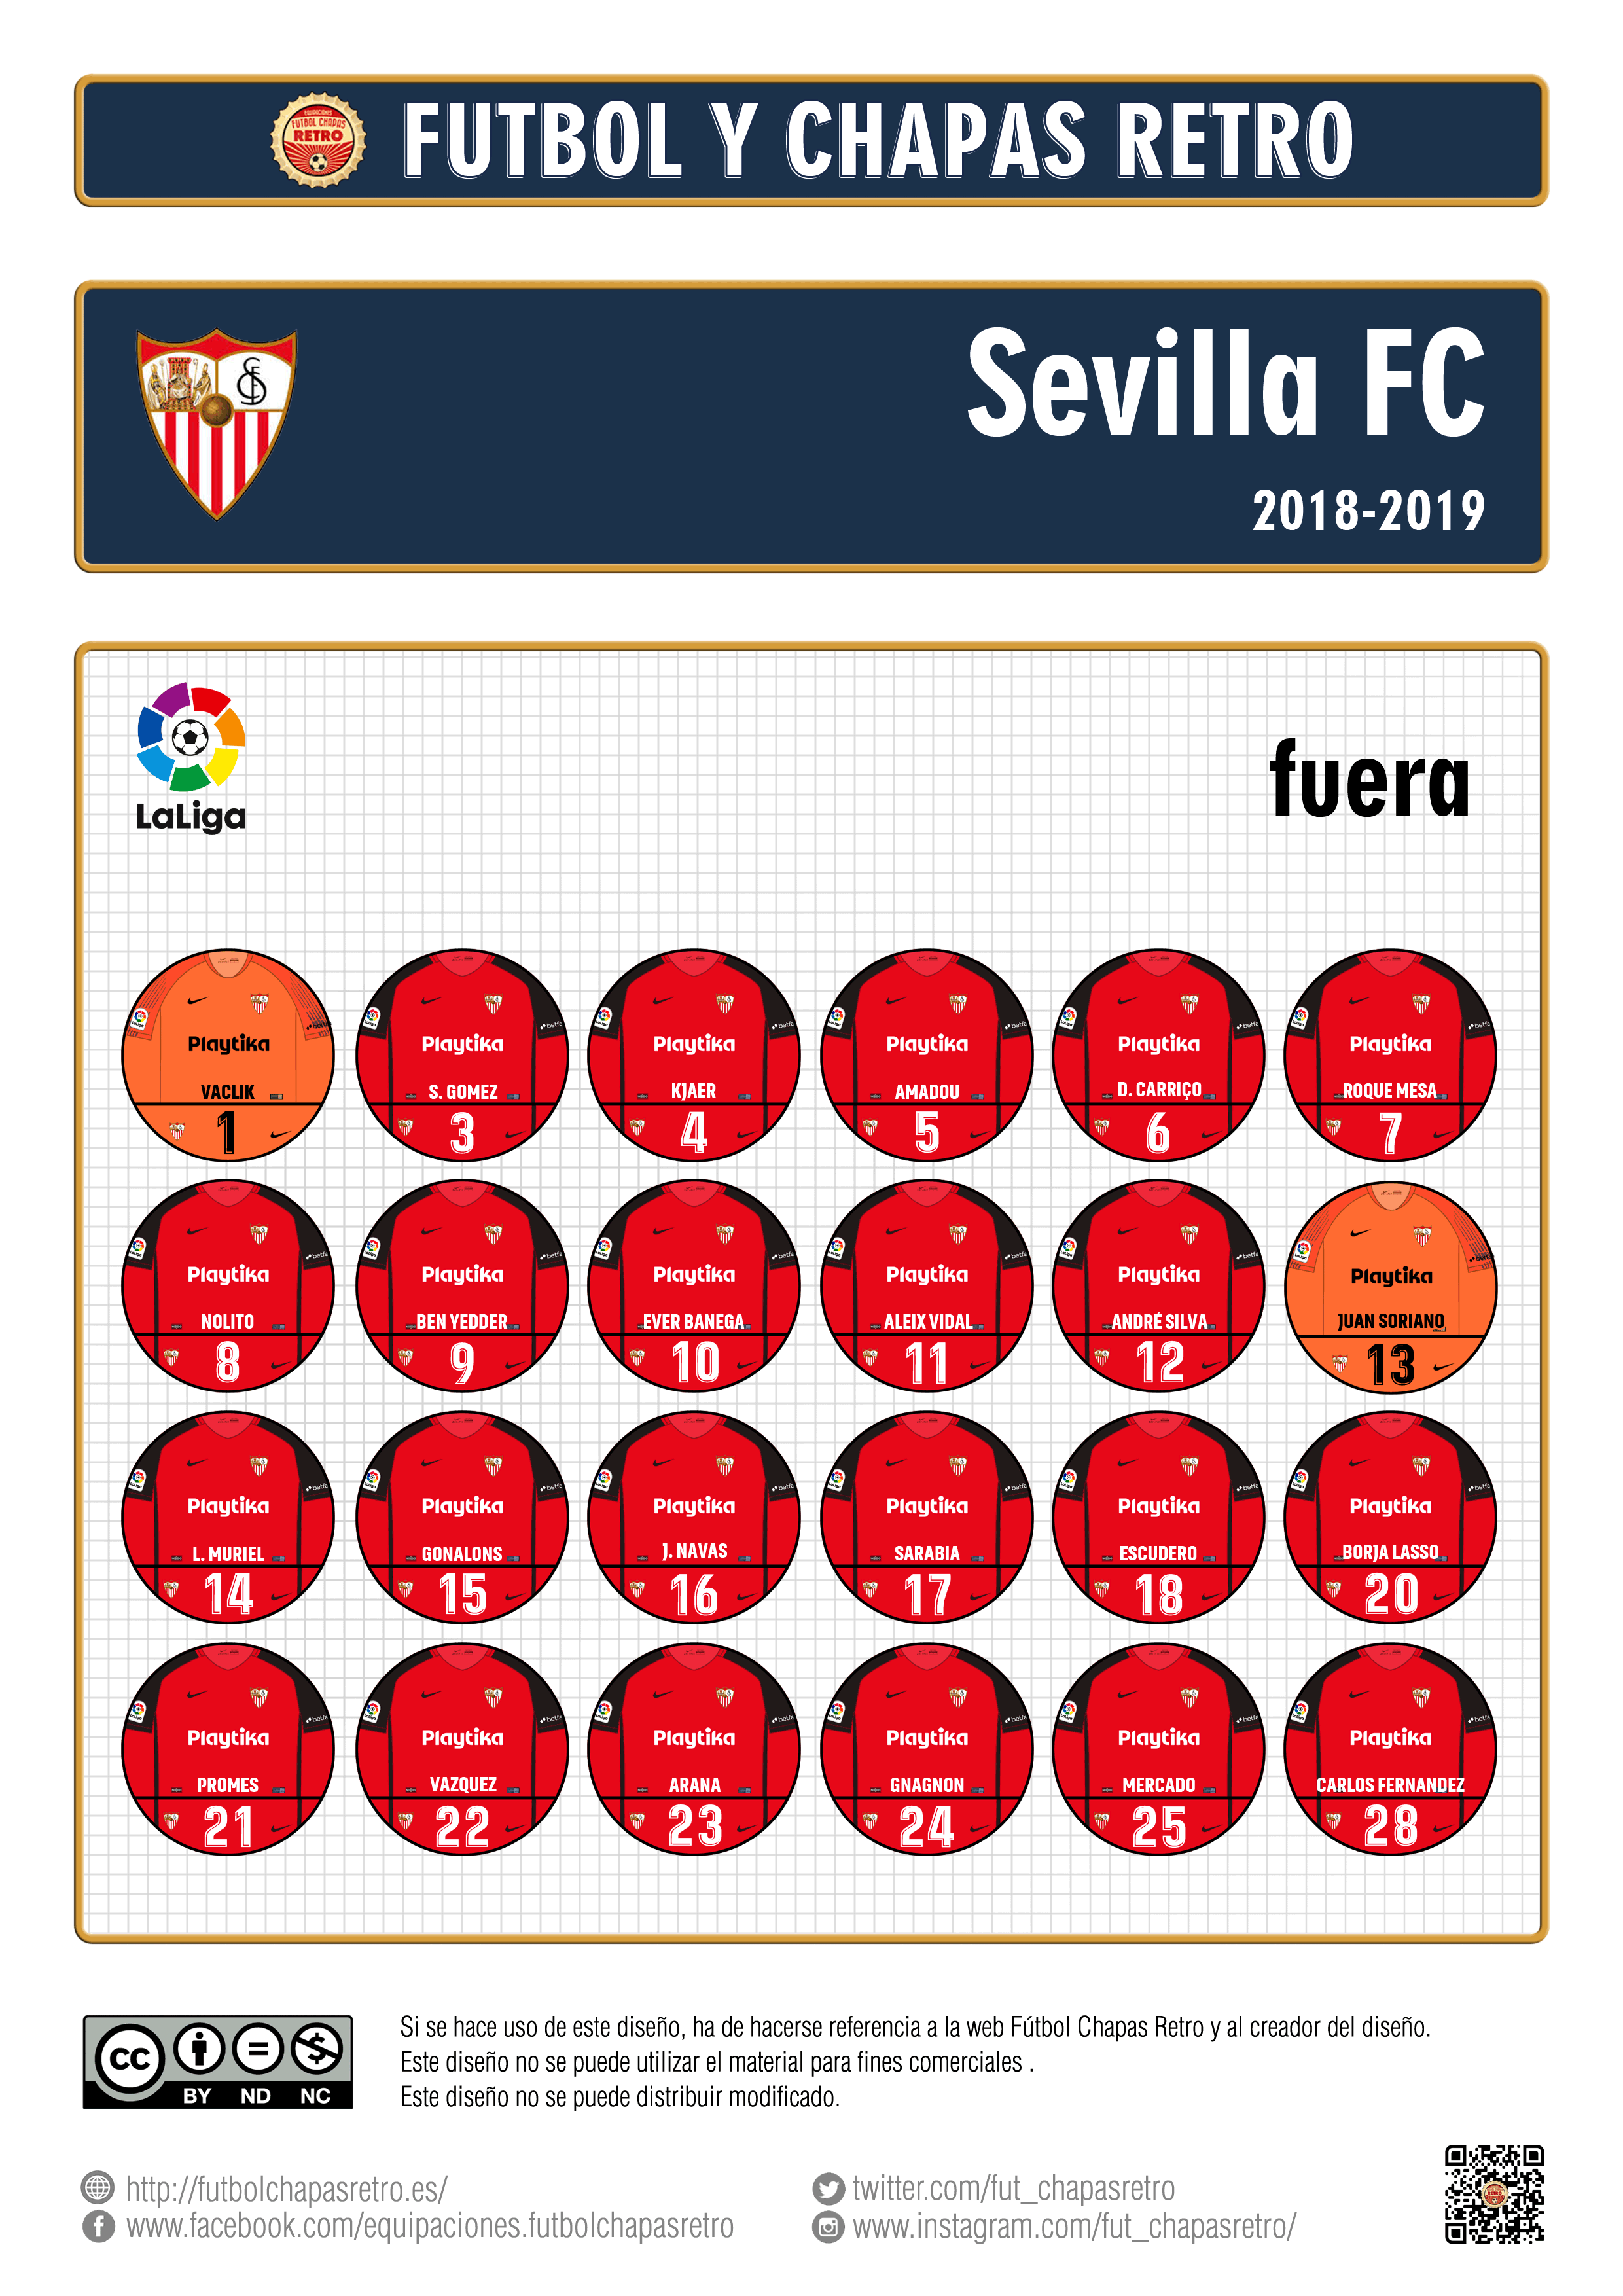 Sevilla FC 2018-2019 | Fútbol Chapas Retro